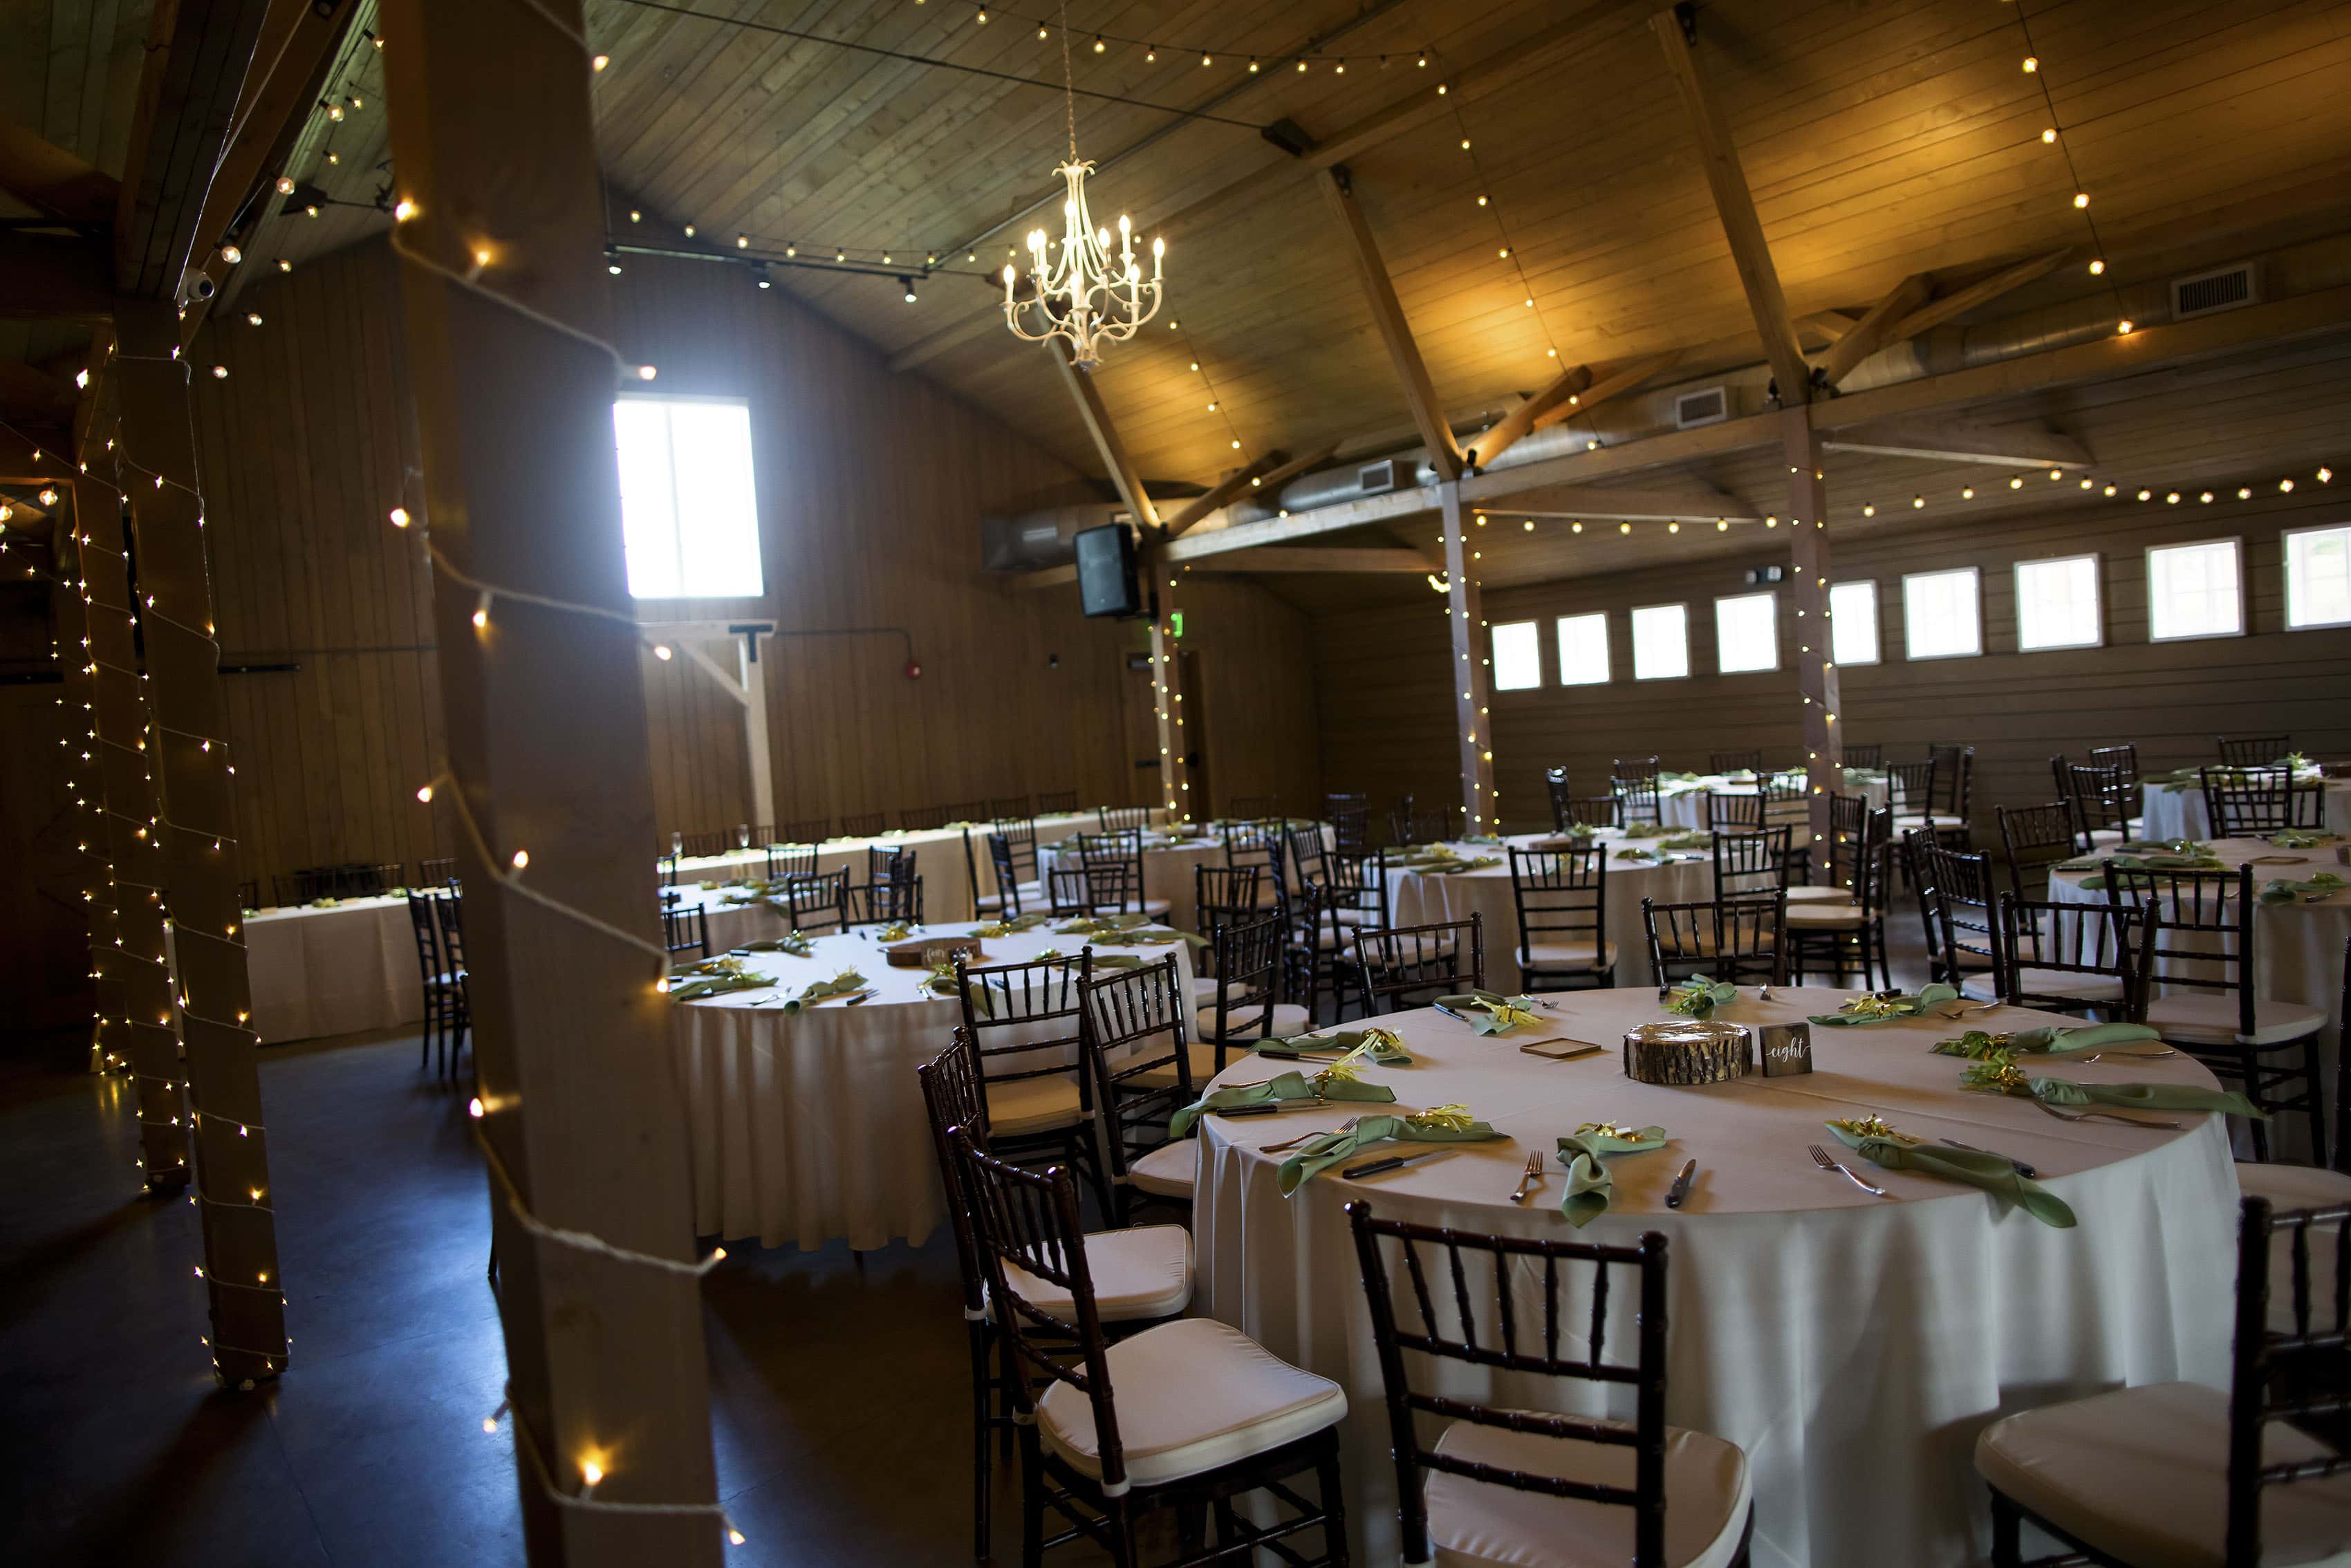 The Barn at Raccoon Creek wedding venue